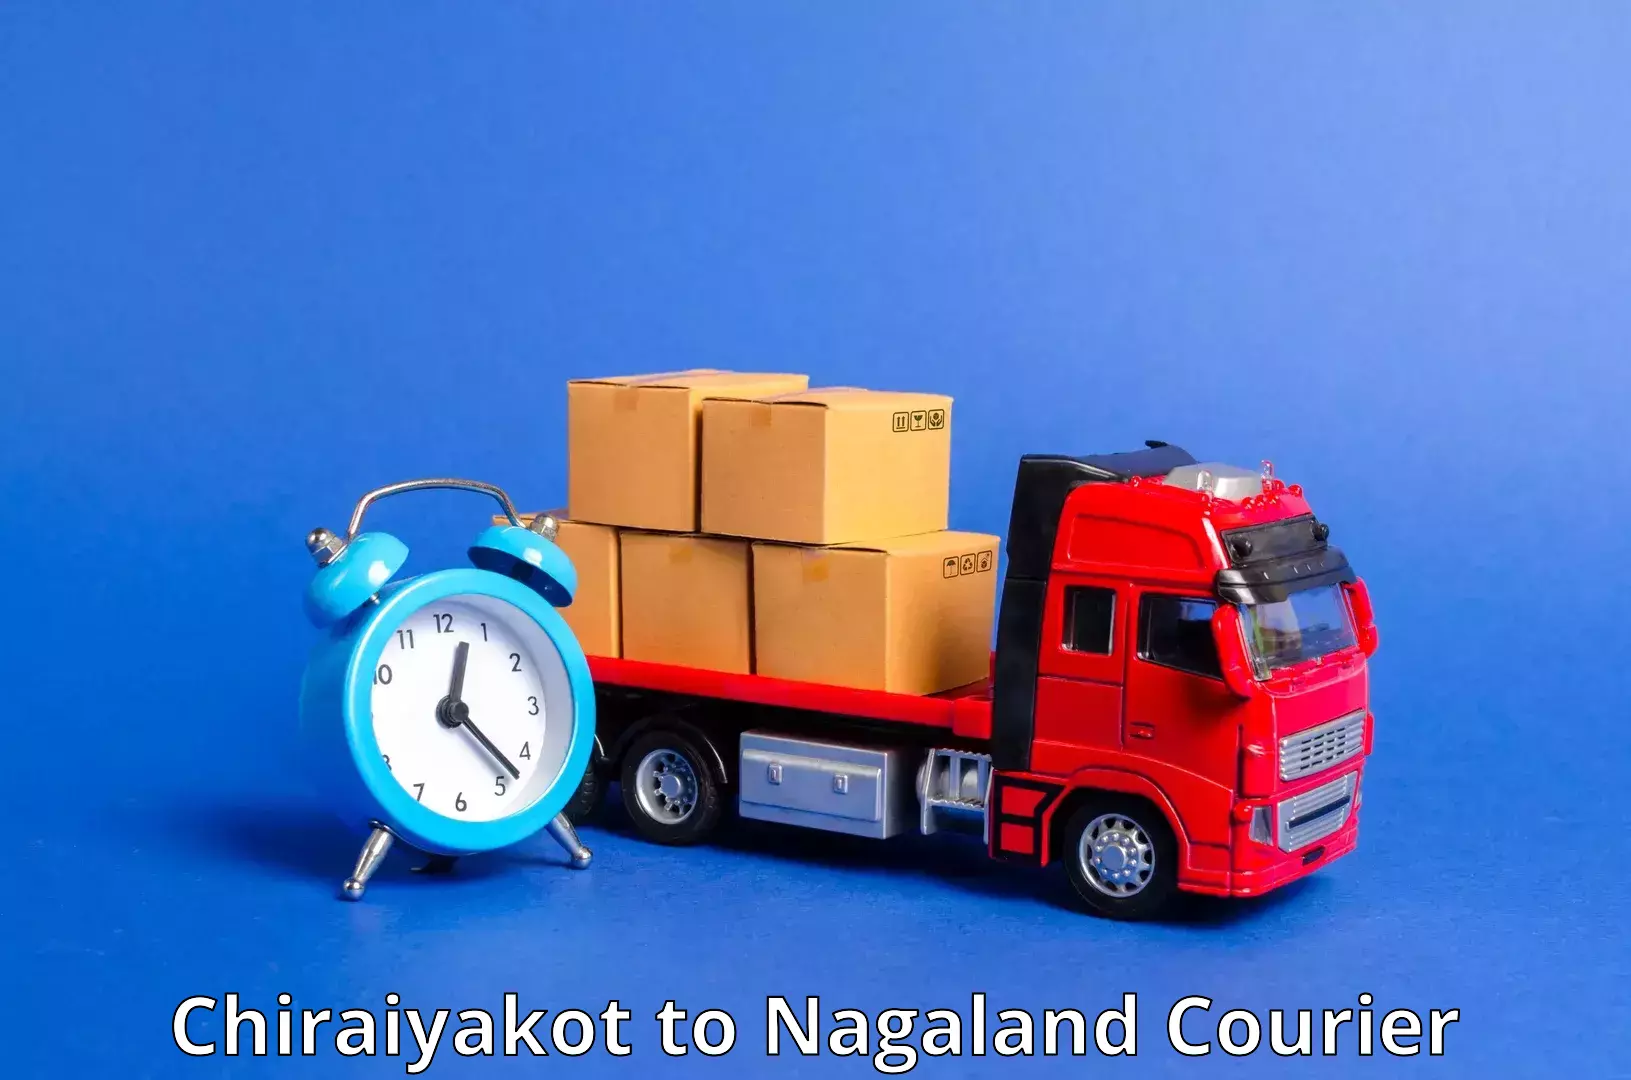 International parcel service Chiraiyakot to Nagaland